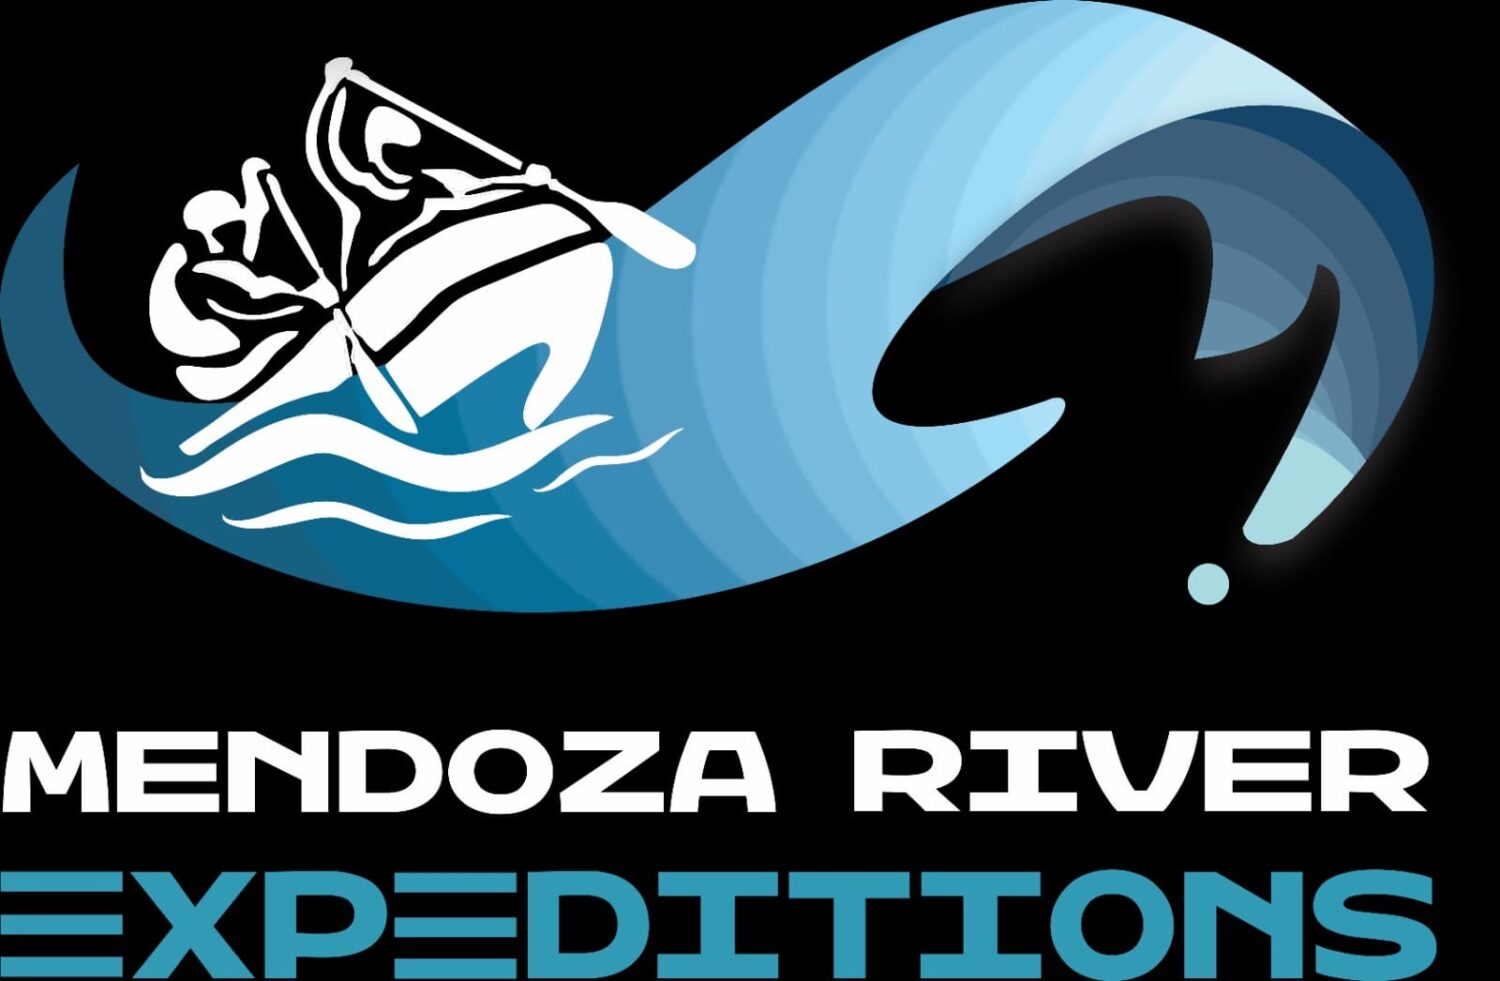 MENDOZA RIVER EXPEDITION